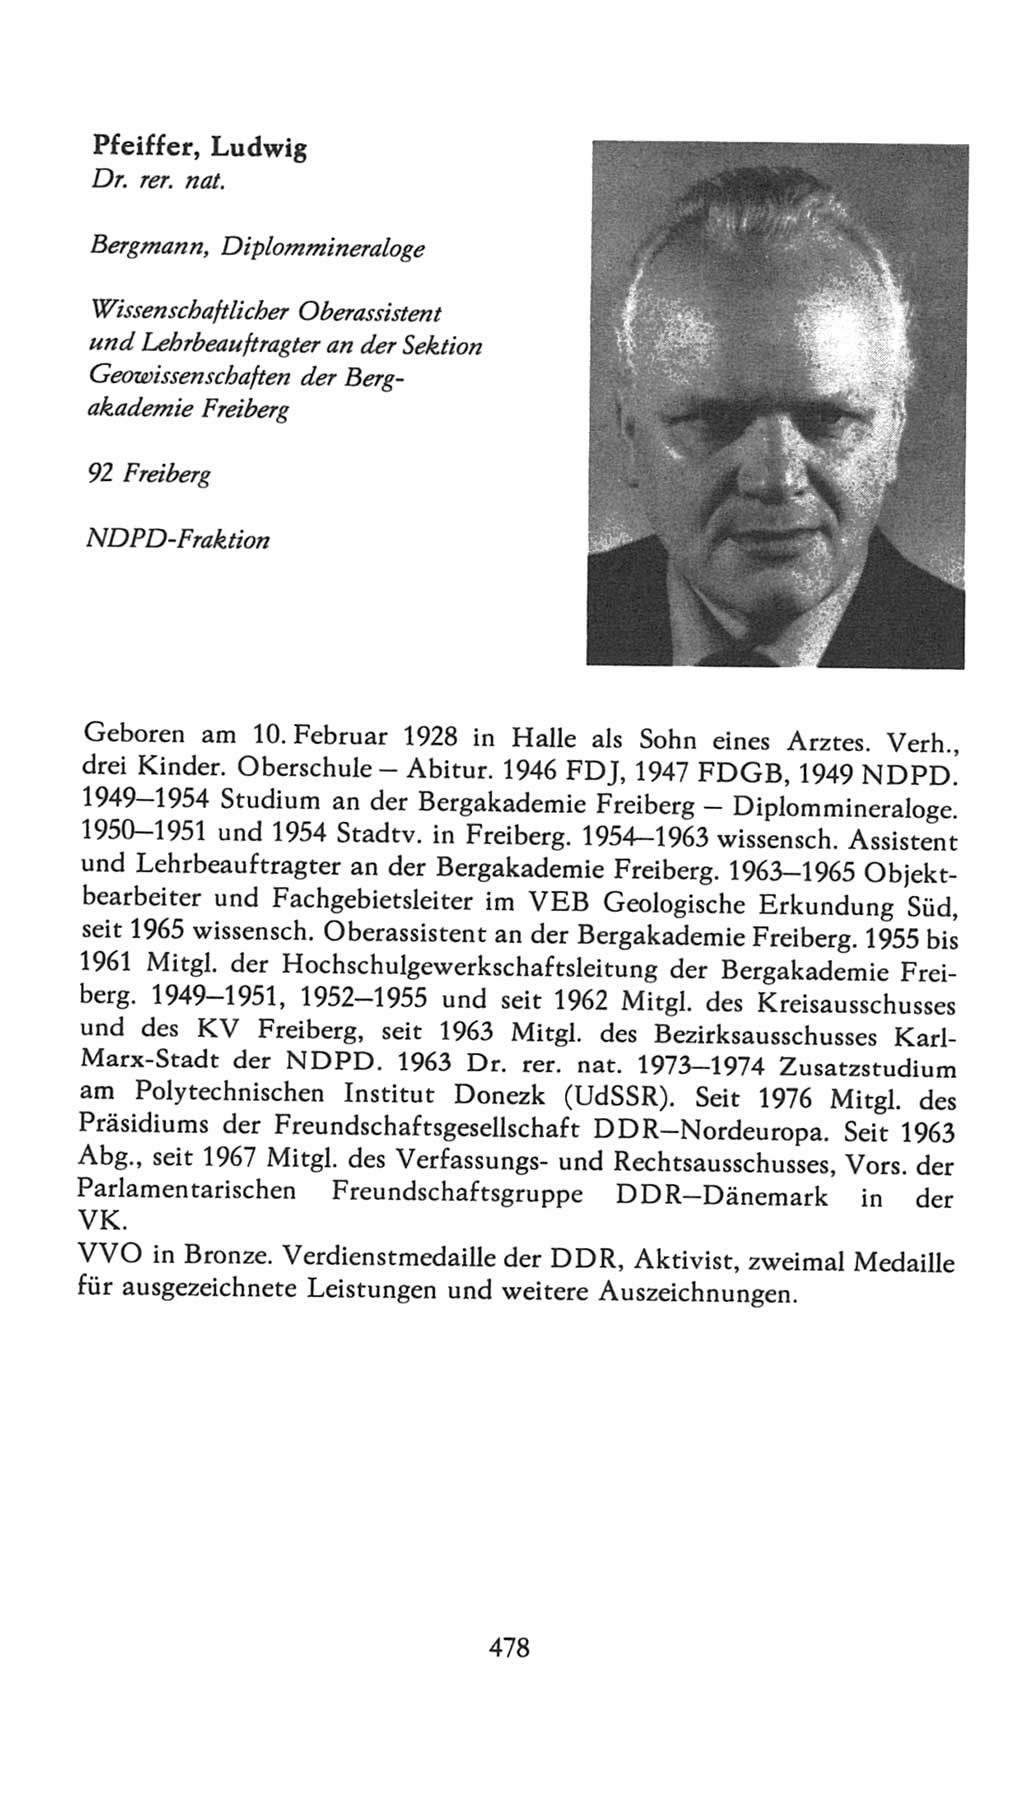 Volkskammer (VK) der Deutschen Demokratischen Republik (DDR), 7. Wahlperiode 1976-1981, Seite 478 (VK. DDR 7. WP. 1976-1981, S. 478)